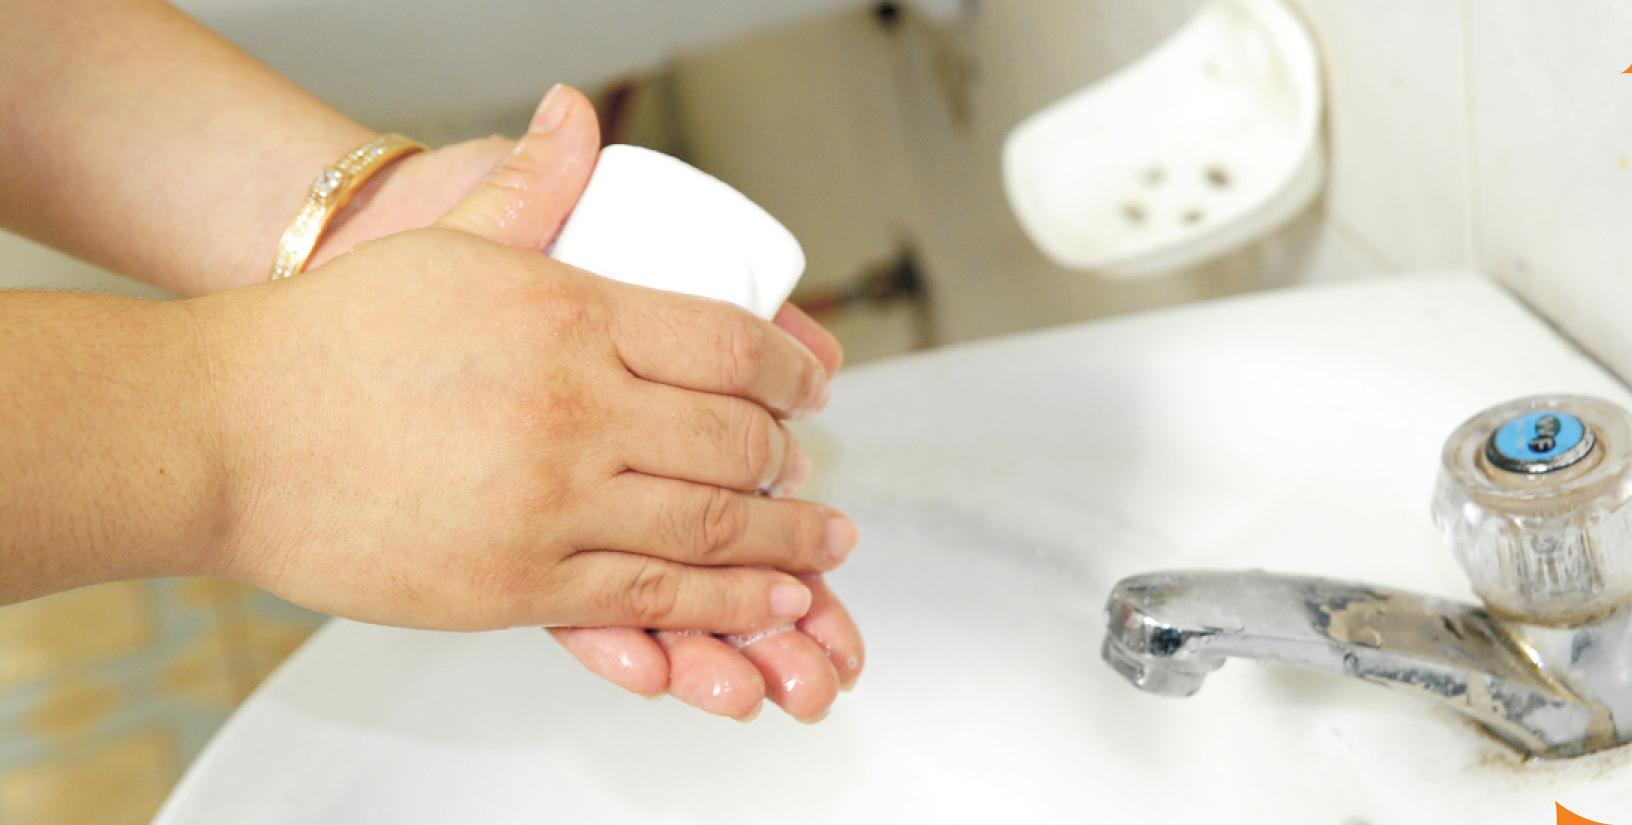   Thường xuyên rửa tay bằng xà phòng dưới vòi nước chảy là cách tốt nhất để phòng bệnh tay chân miệng  